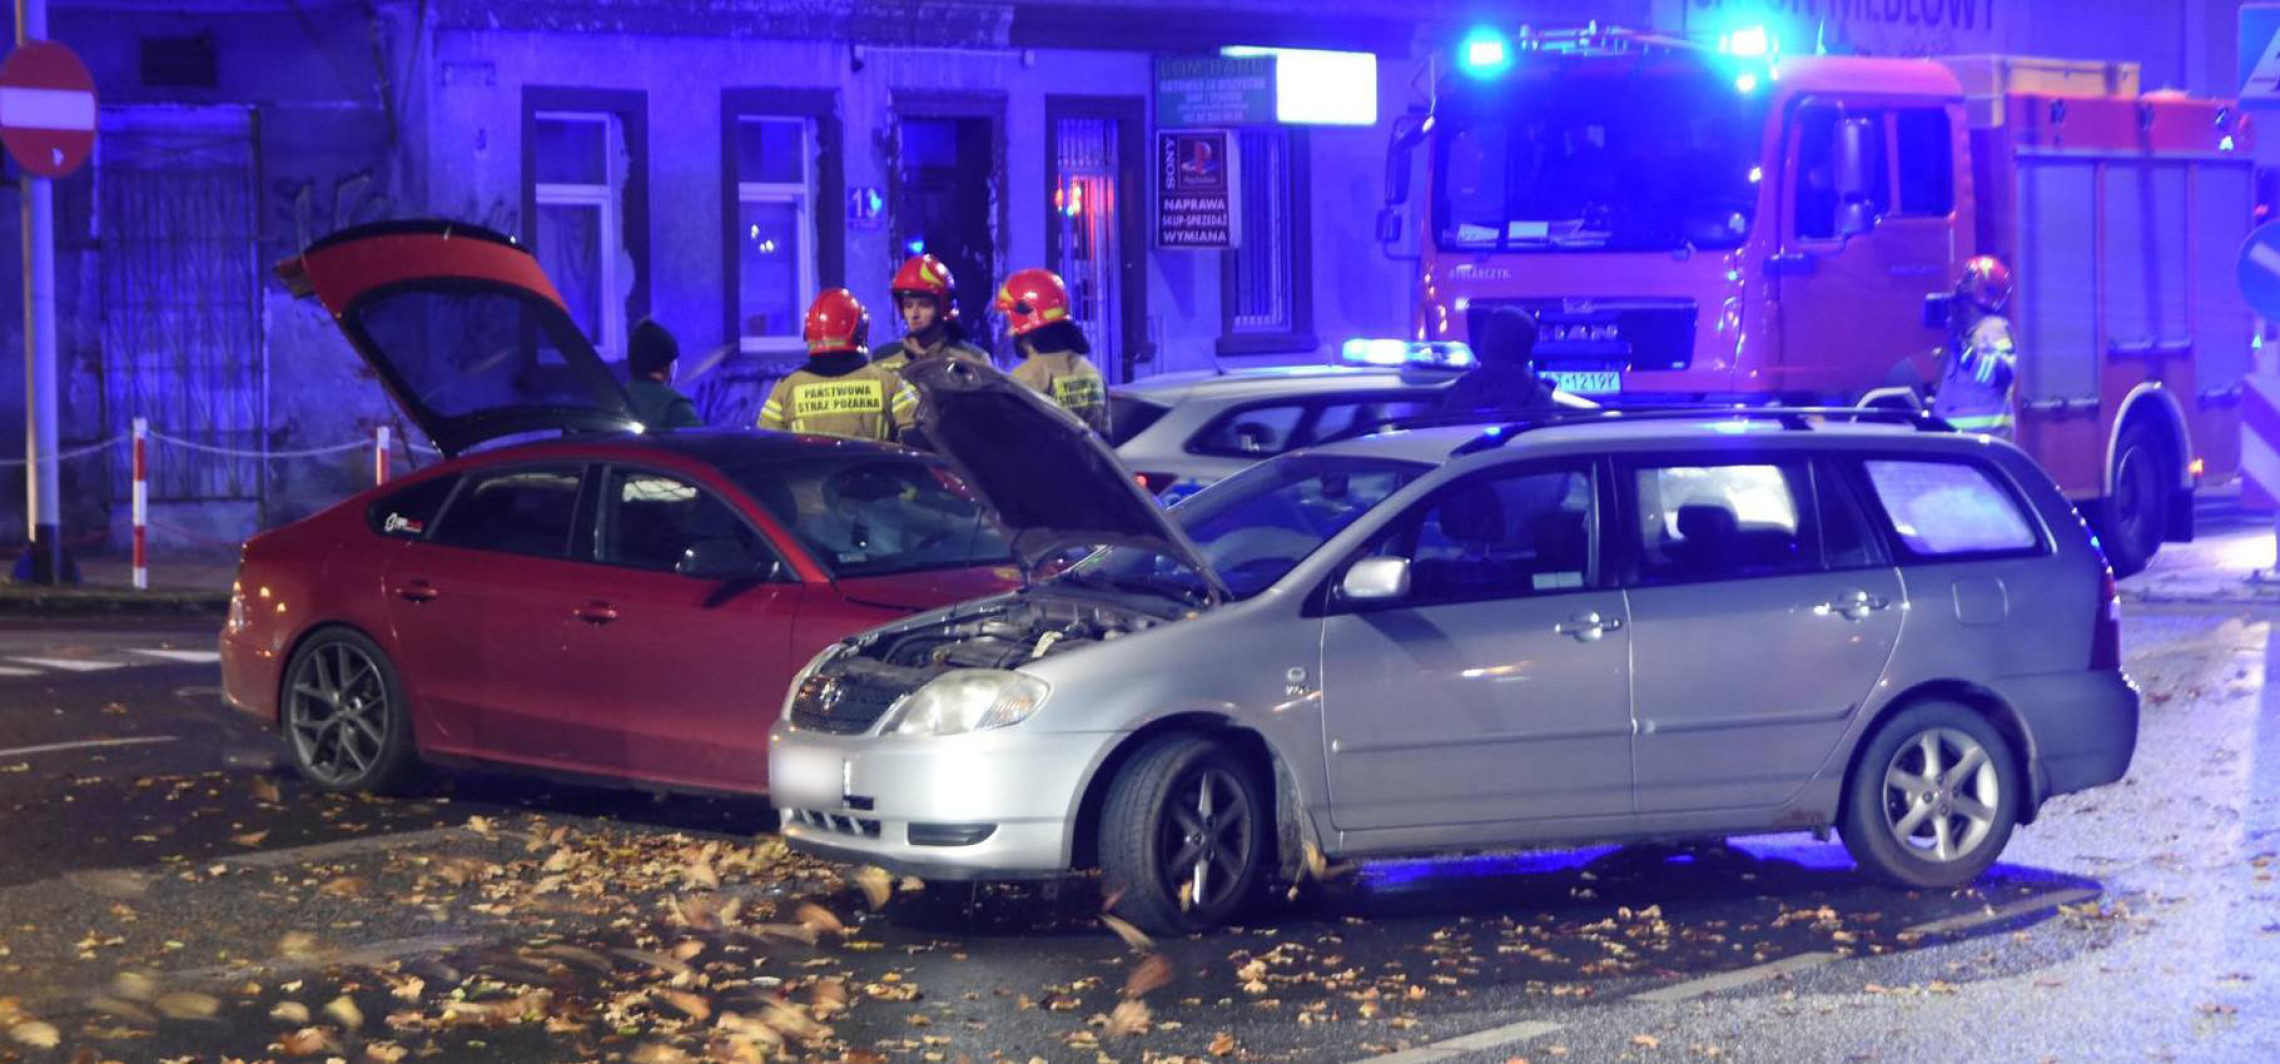 Inowrocław - Wypadek w centrum. Policja szuka świadków